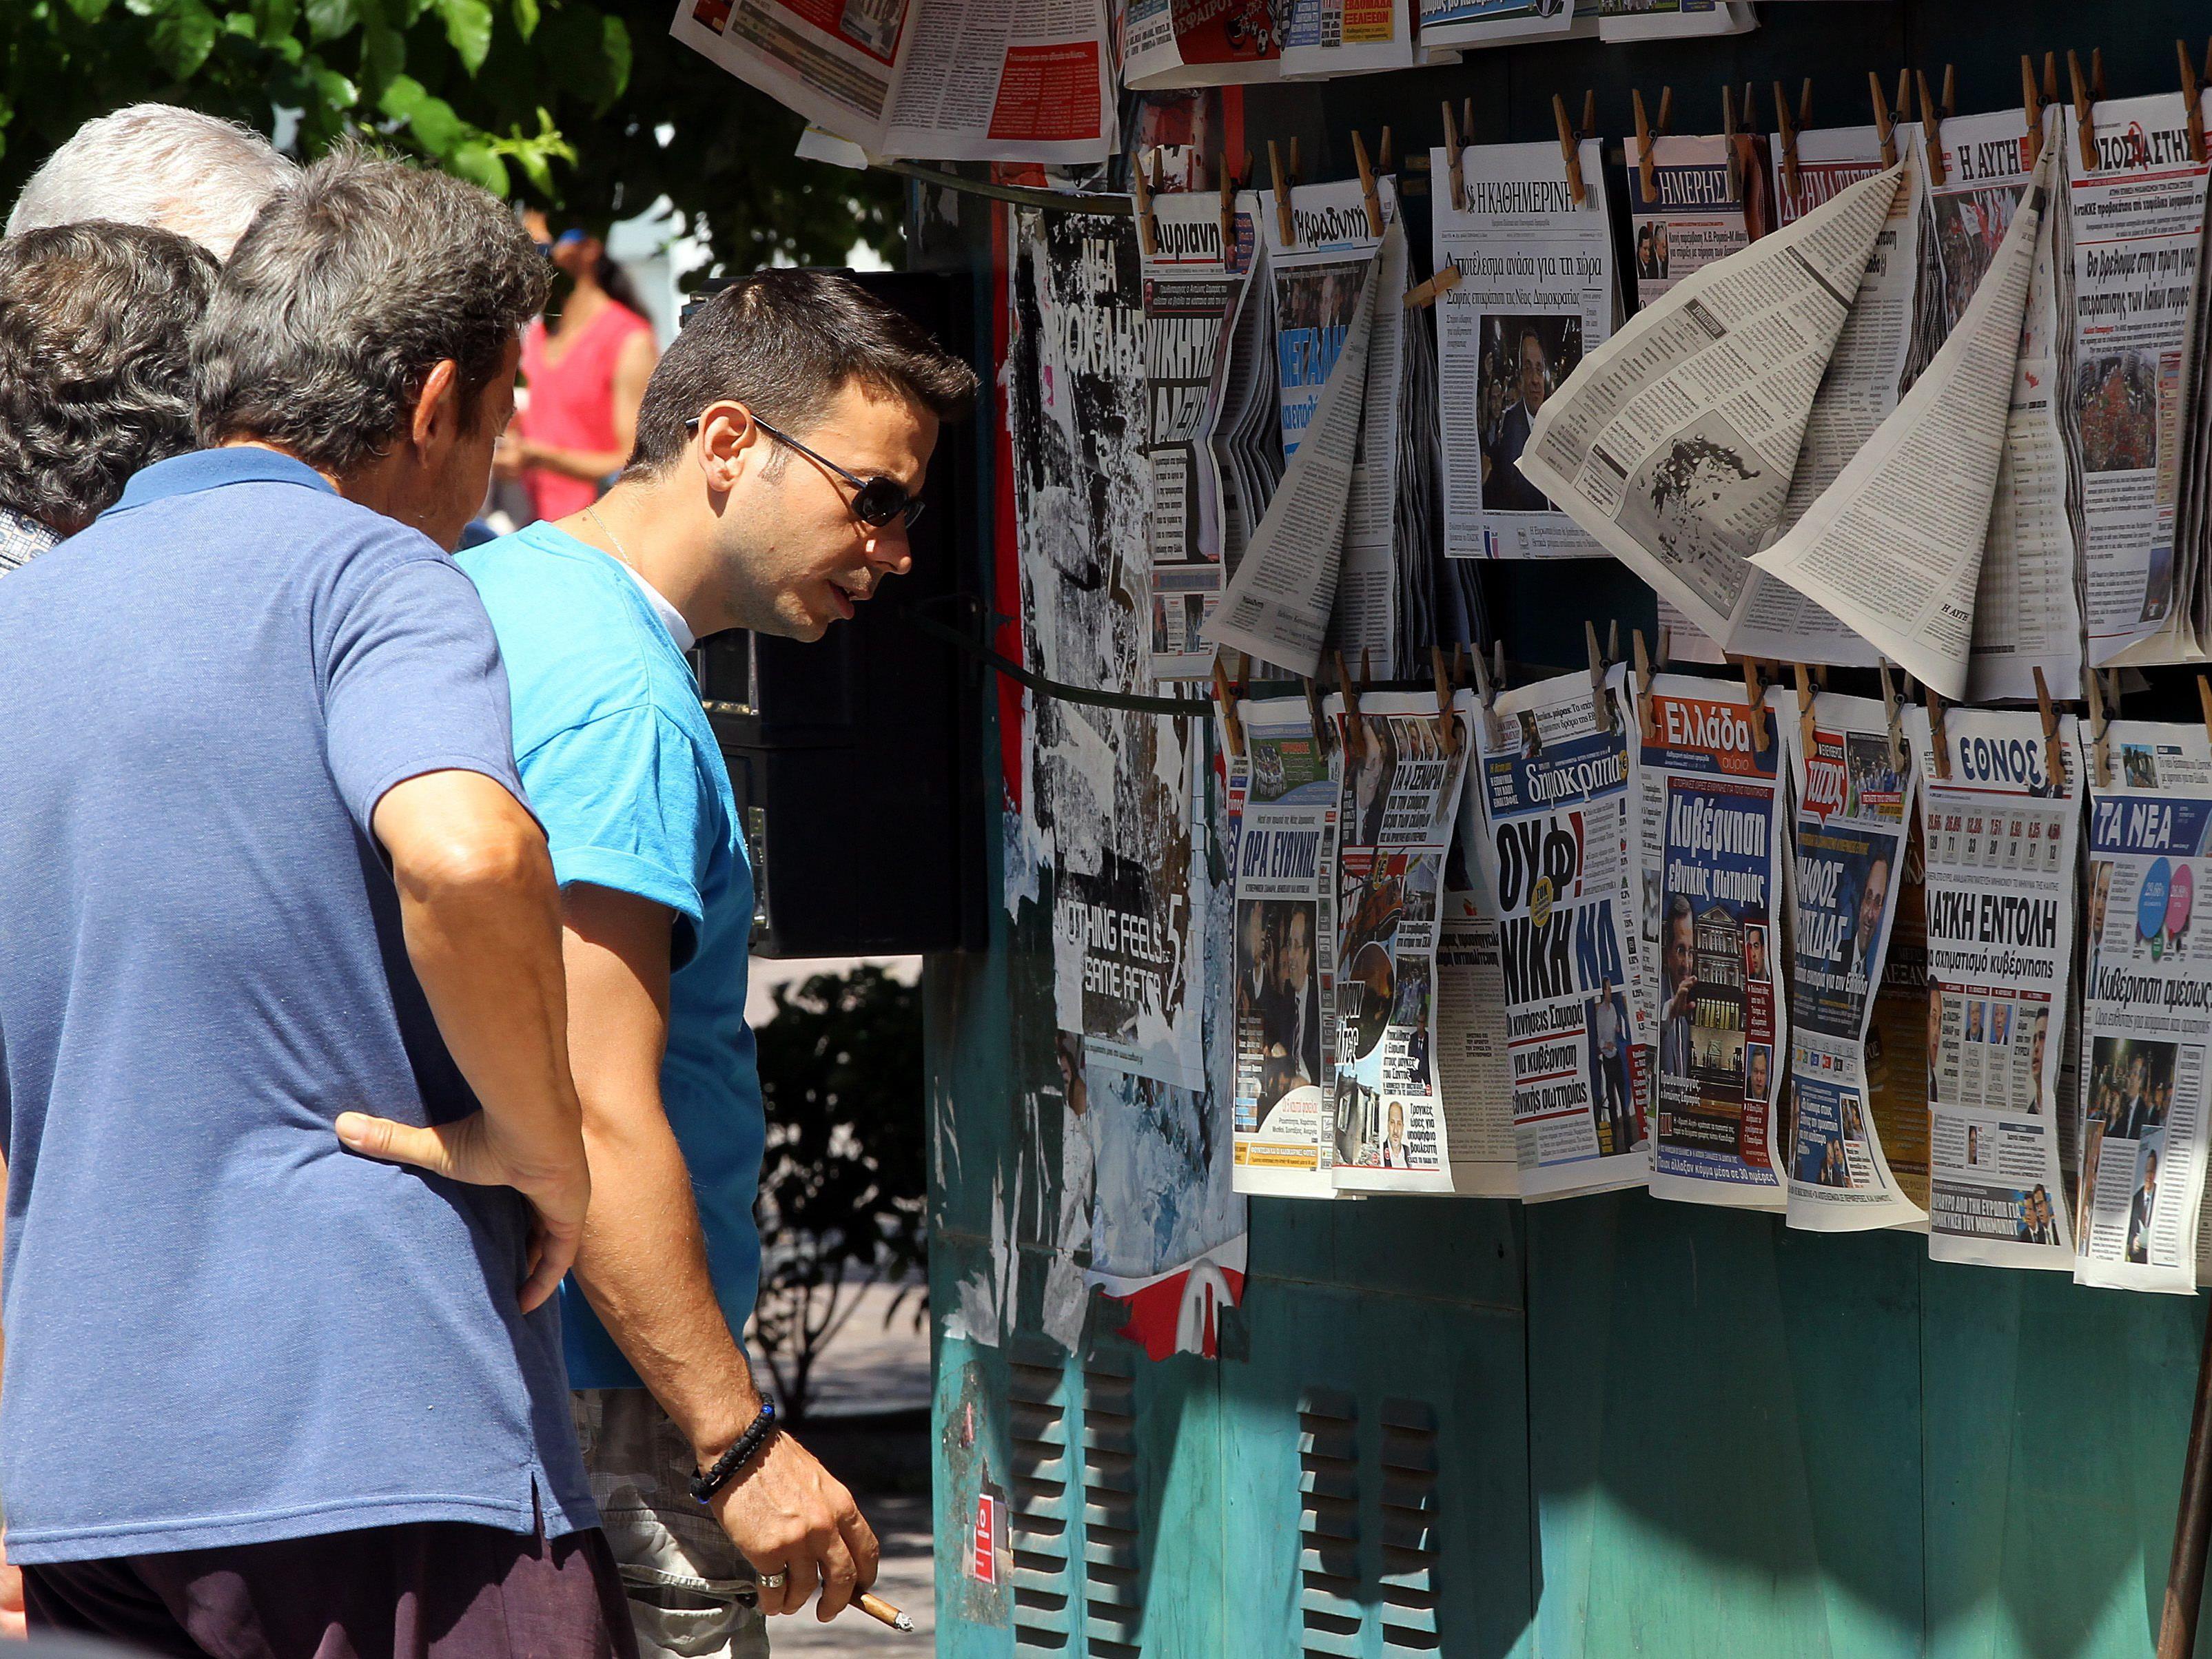 Koalitionsverhandlungen laufen auf Hochtouren. Die Headlines in Griechenland überschlagen sich.